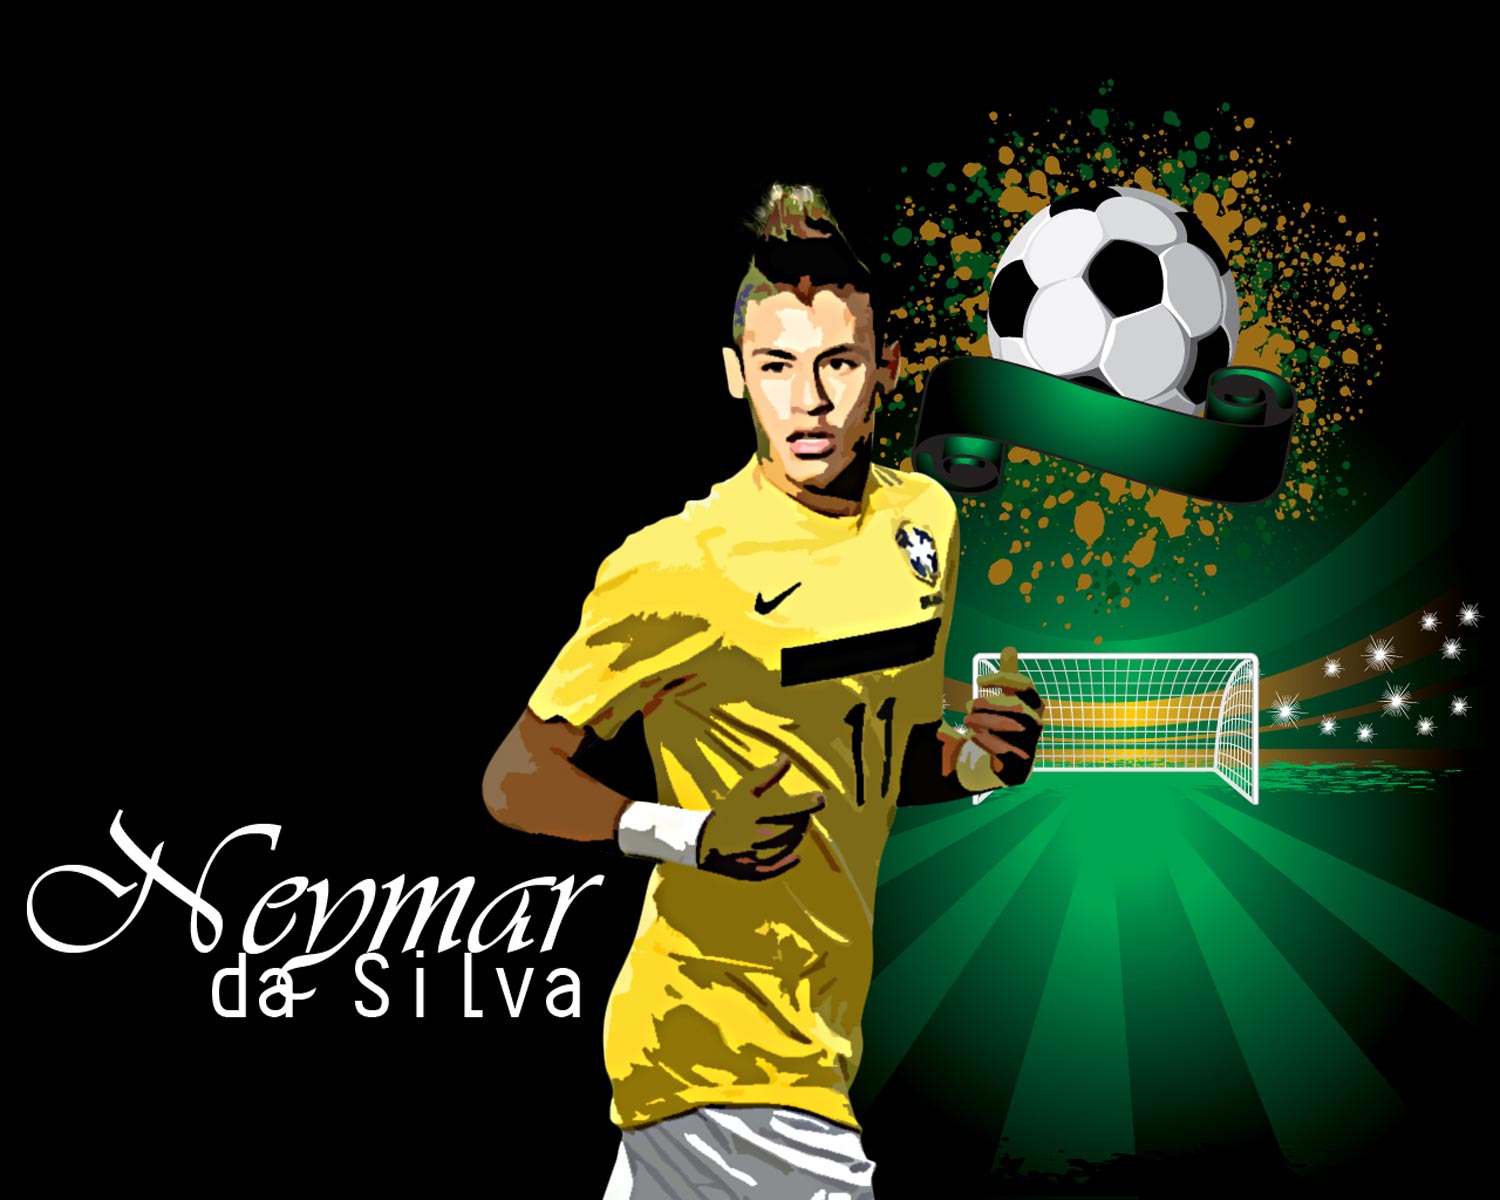 Las mejores jugadas Neymar (Vídeo)